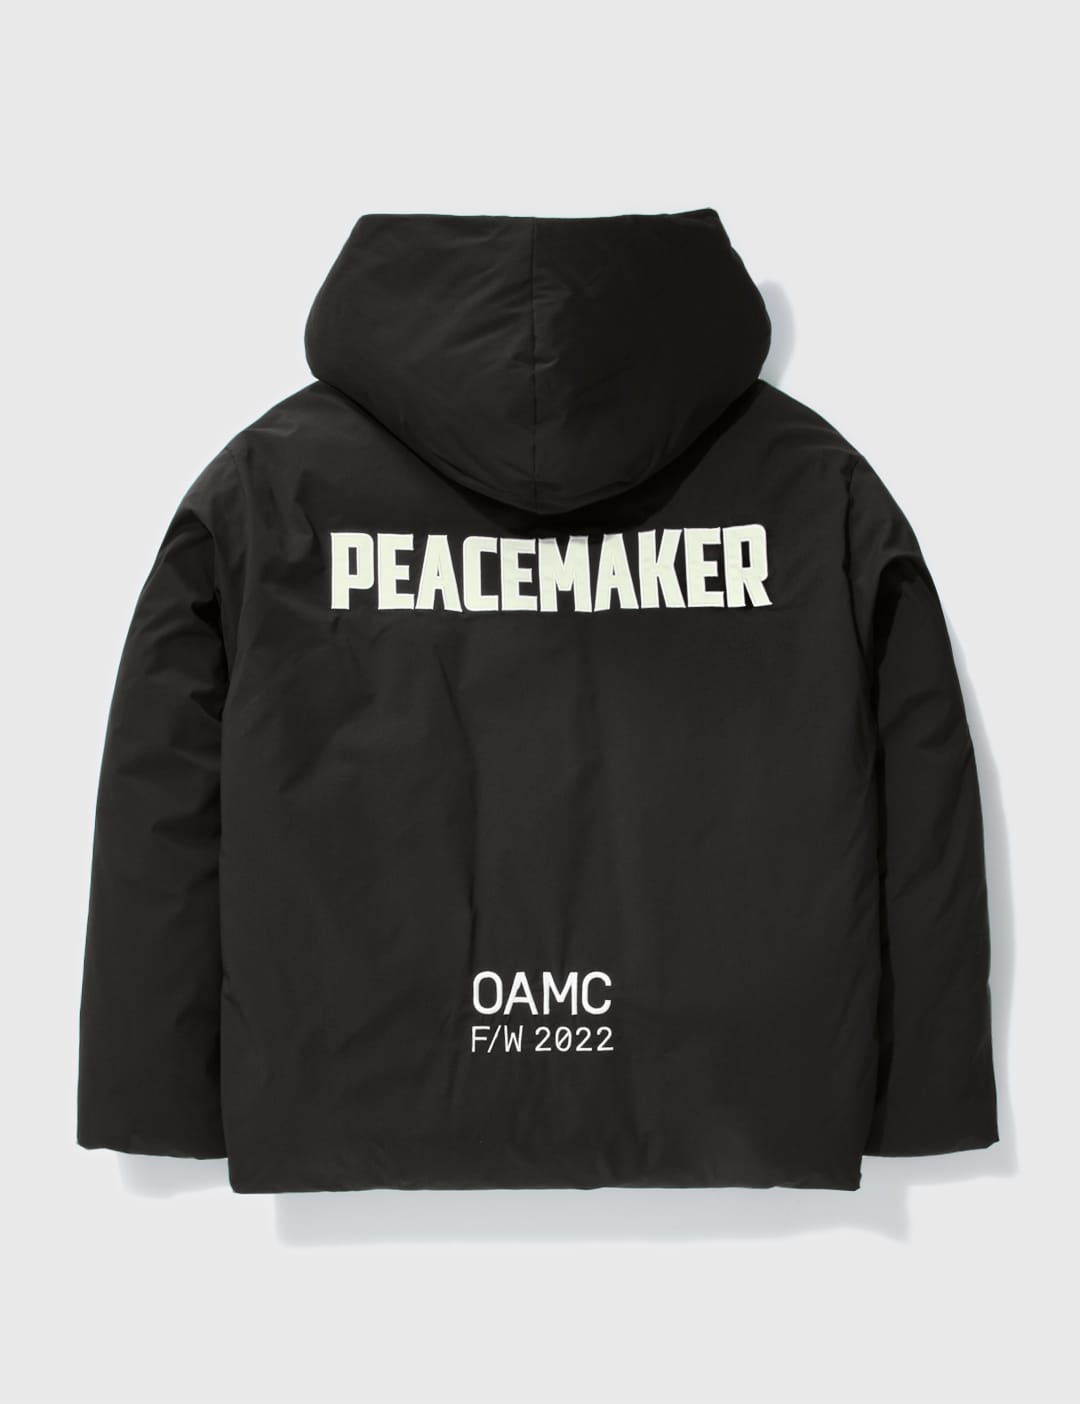 OAMC - ピースメーカー リチウム ジャケット | HBX - ハイプビースト 